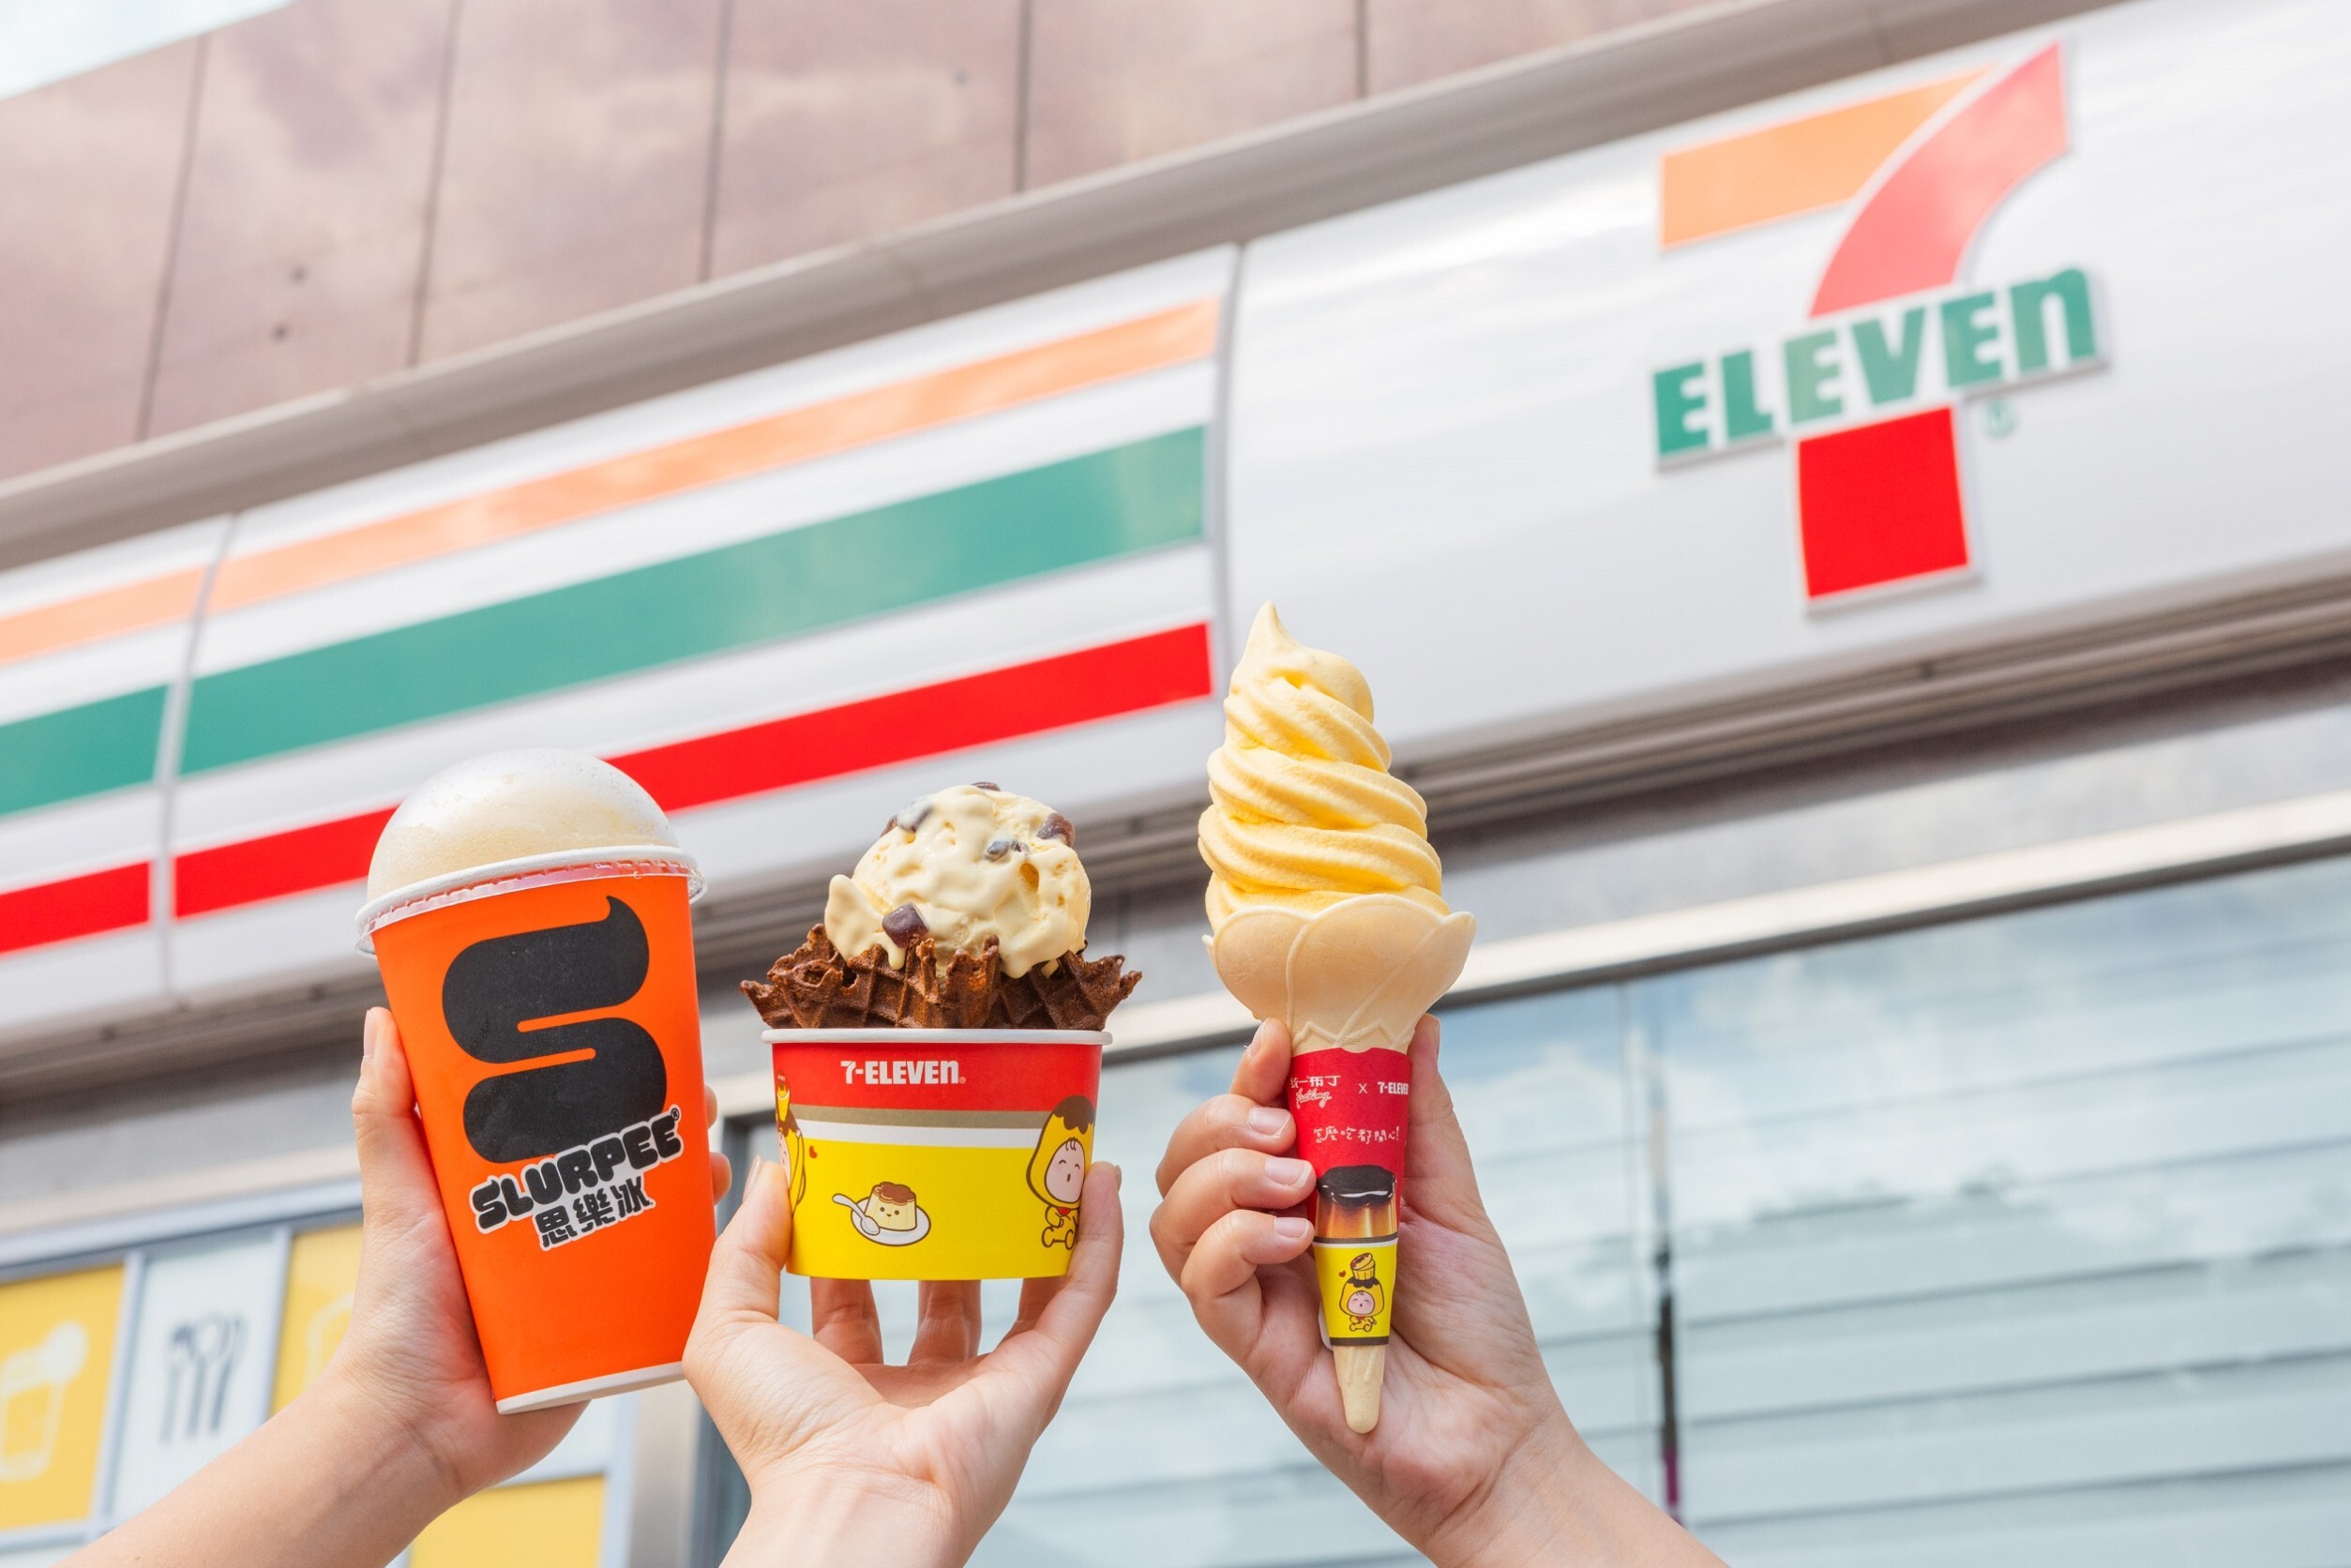 【慶祝台南建城400年】7-ELEVEN推出懷舊冰品與飲品，創新與傳統的完美結合